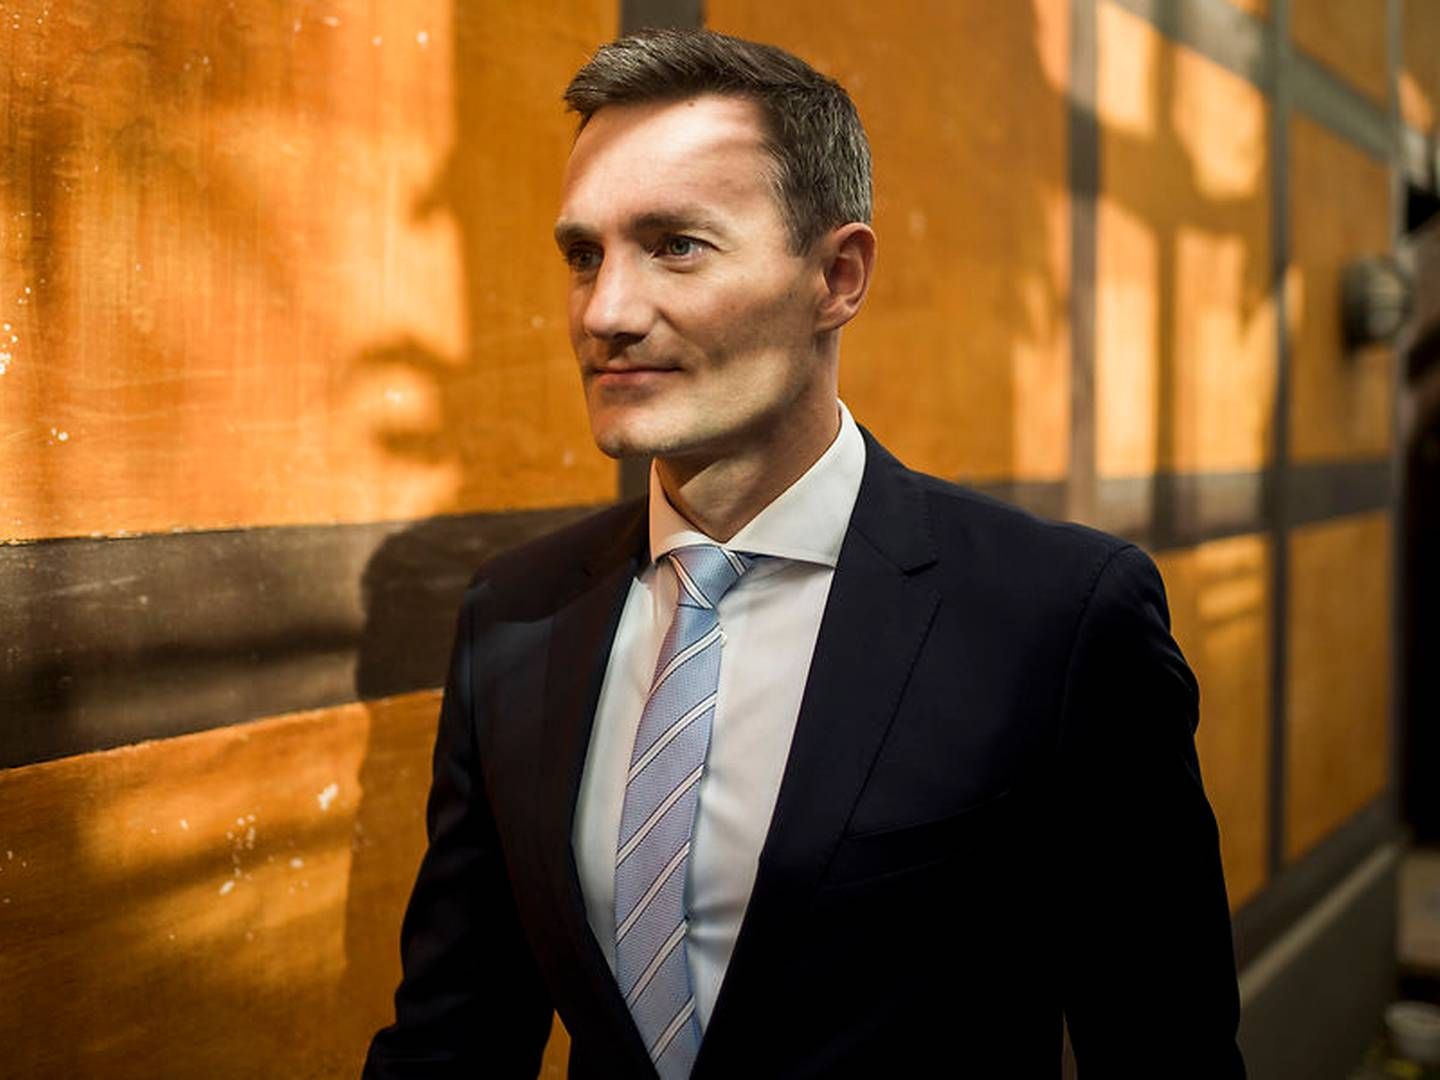 Erhvervsminister Rasmus Jarlov (K) glæder sig over, hvad det indre marked betyder for dansk økonomi. | Foto: Mads Joakim Rimer Rasmussen/Ritzau Scanpix